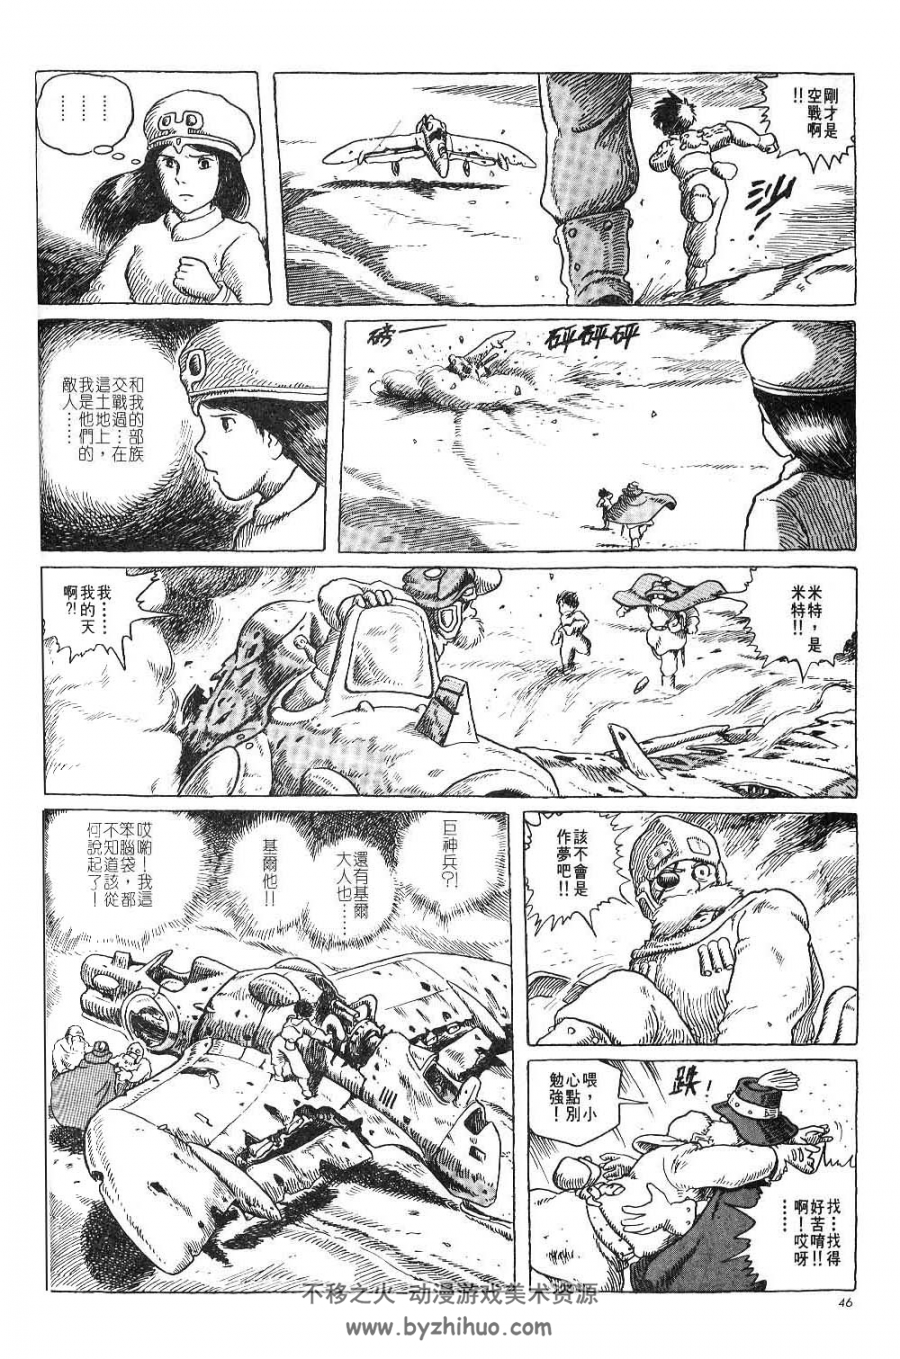 风之谷宫崎骏 4K高清7卷全台湾东贩中文漫画 百度网盘分享观看